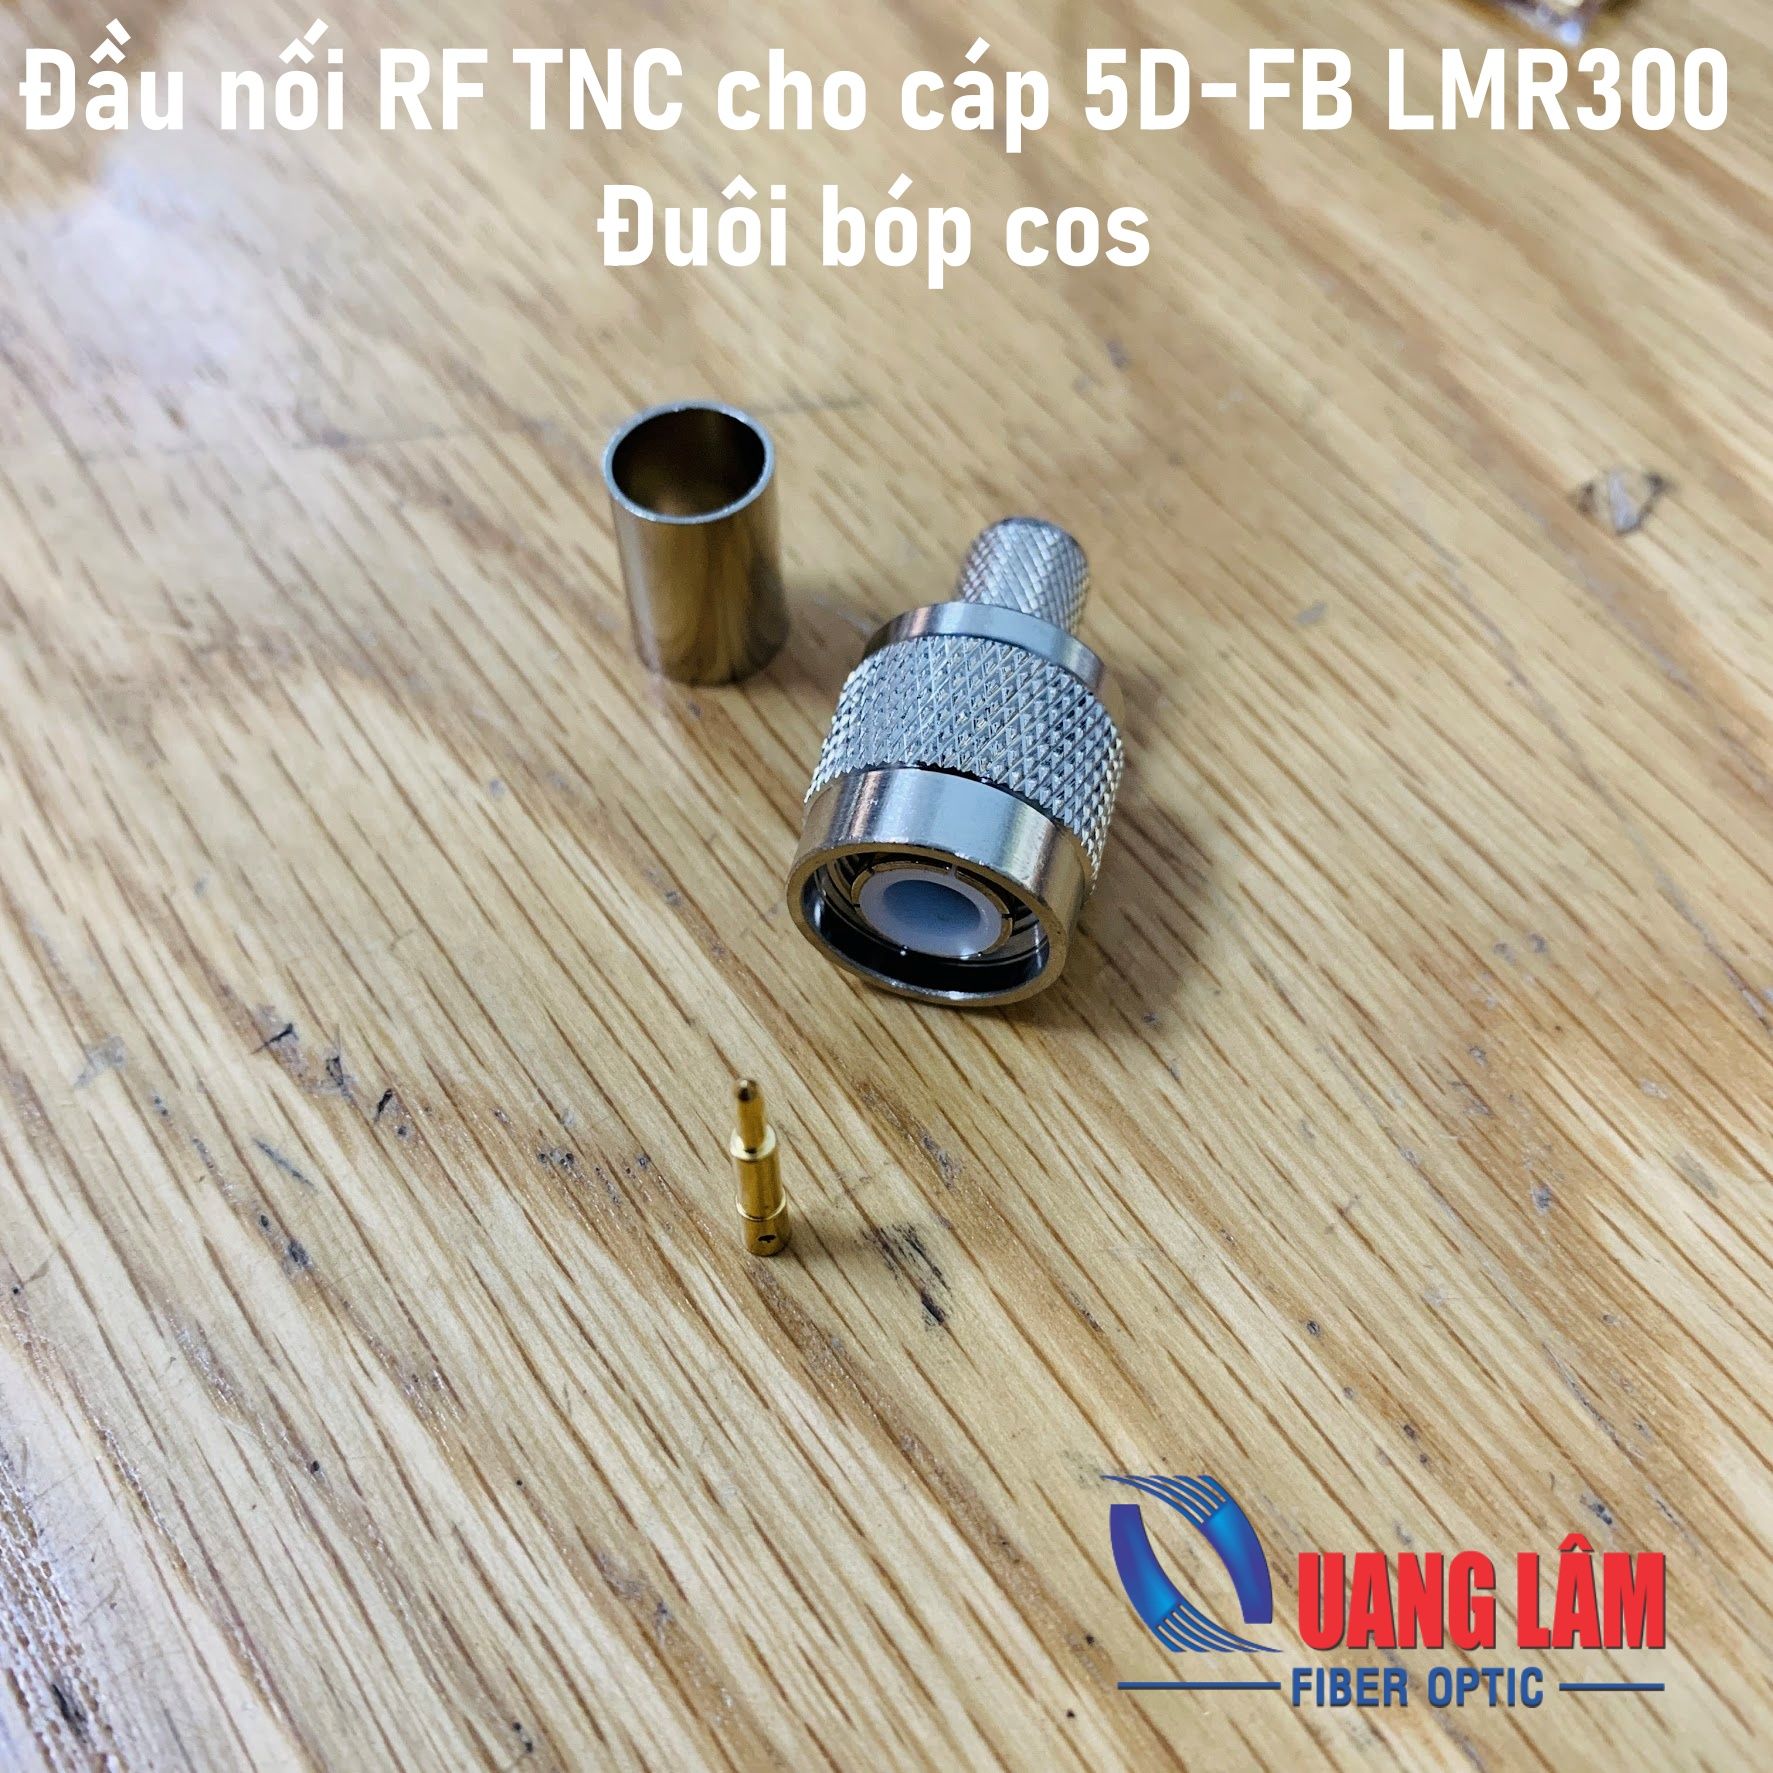 Connector TNC-Male cho cáp 5D-FB LMR300 (Đầu thẳng) - Đuôi bóp cose